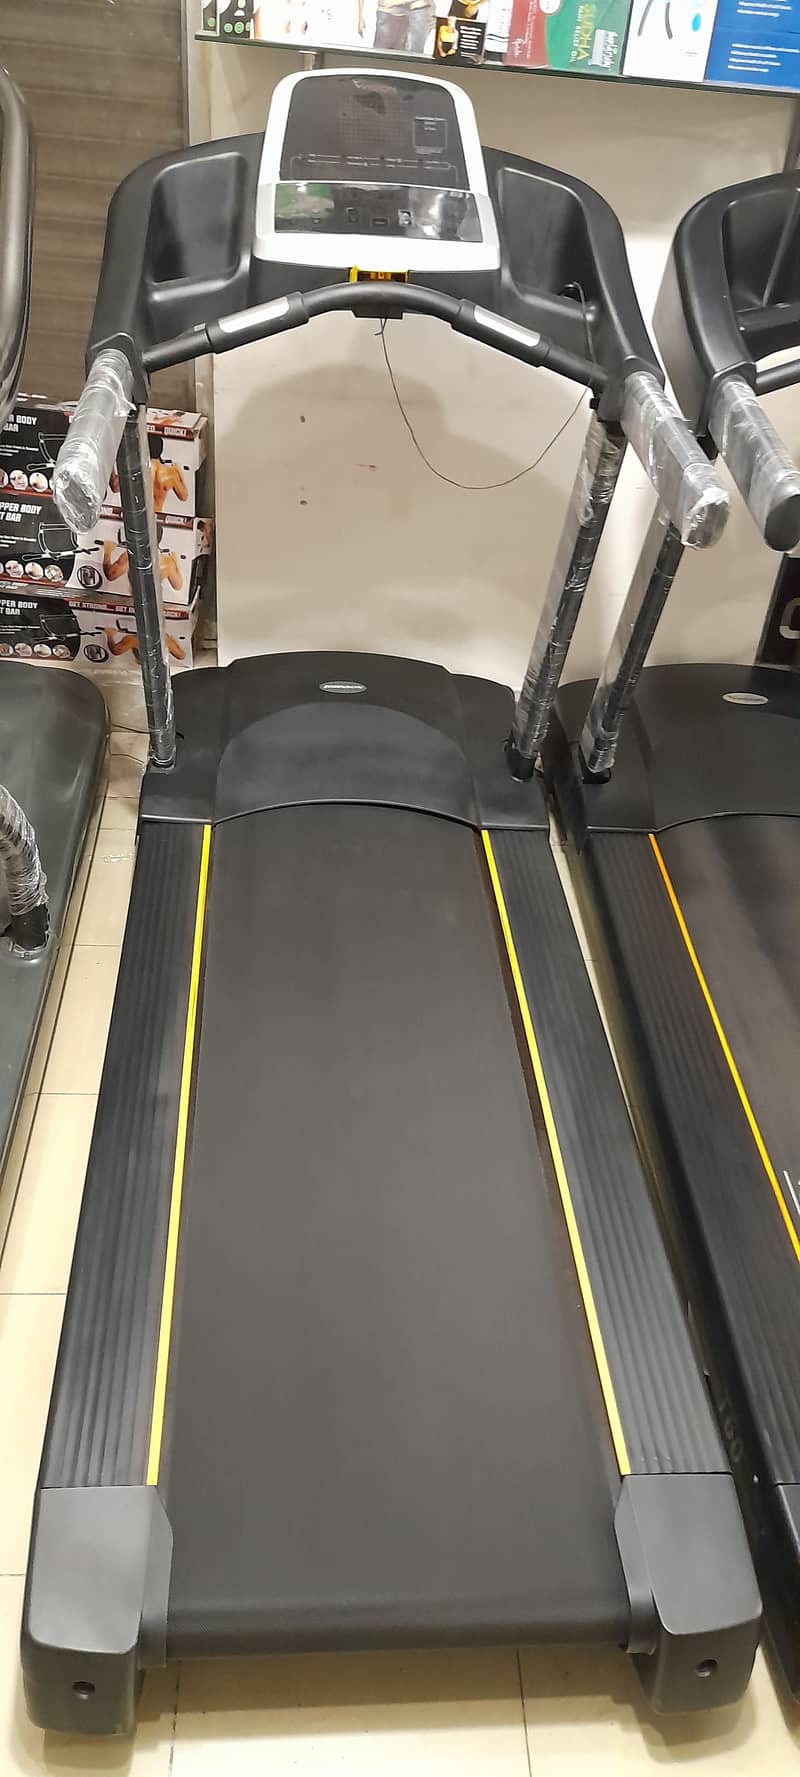 Sole Fitness F80, F63, F85 Treadmill Machine 5